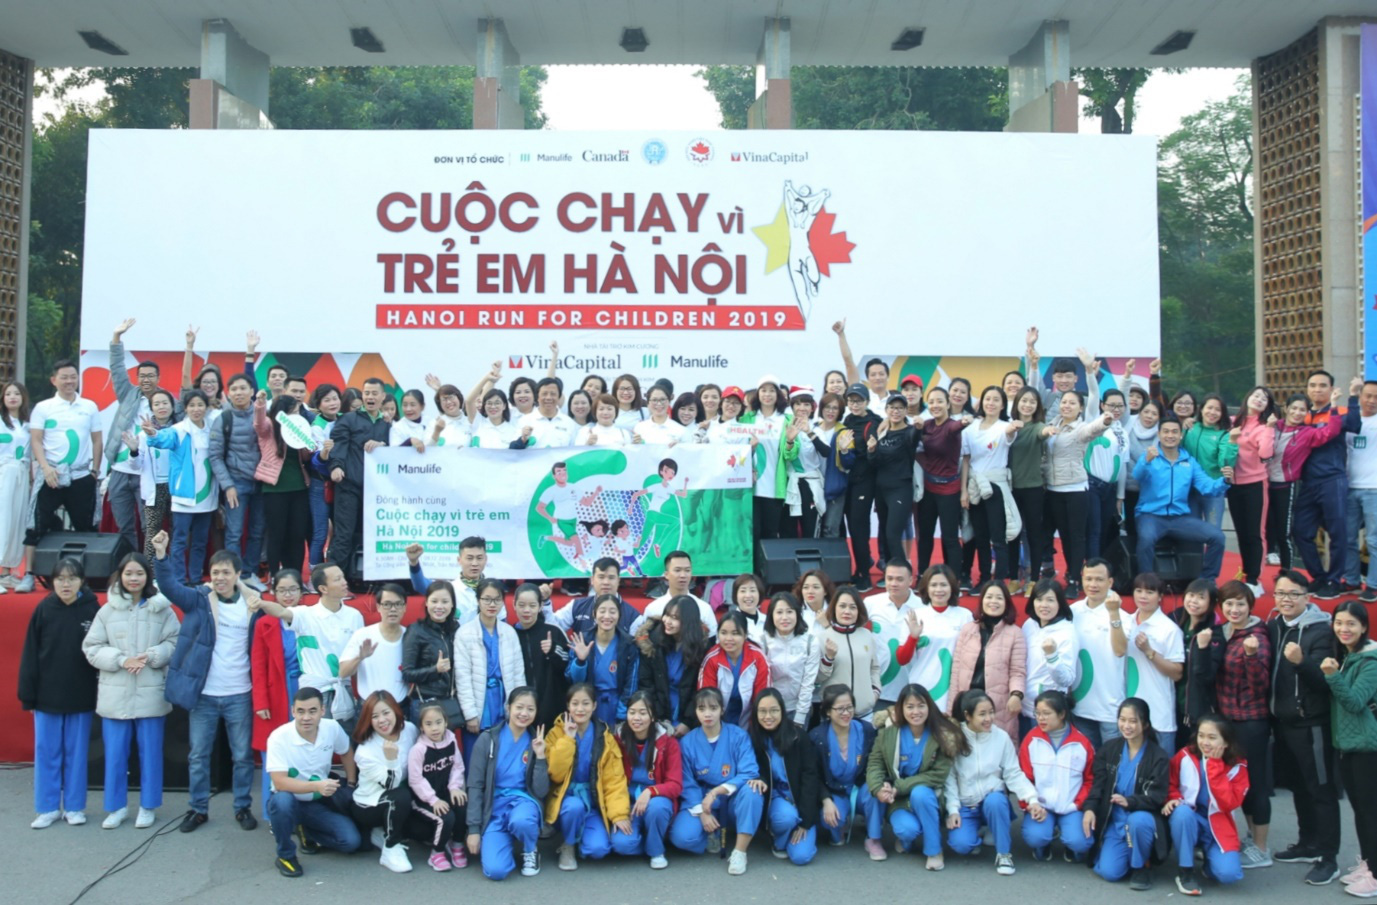 Cuộc chạy vì trẻ em Hà Nội 2019 tràn ngập sắc màu Manulife Việt Nam - Ảnh 1.